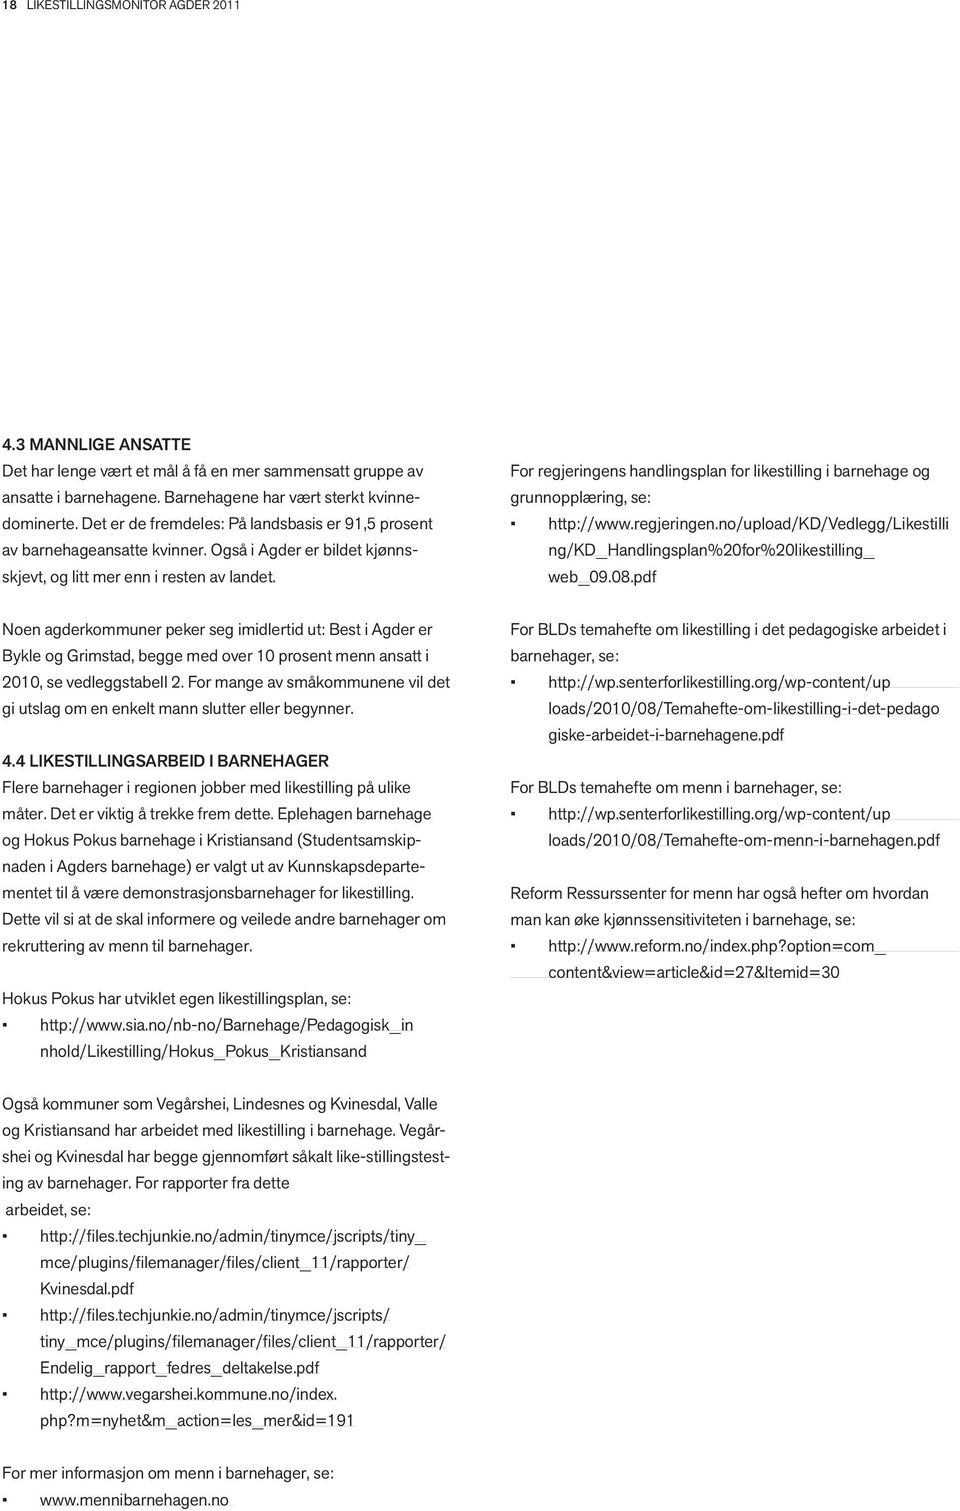 For regjeringens handlingsplan for likestilling i barnehage og grunnopplæring, se: http://www.regjeringen.no/upload/kd/vedlegg/likestilli ng/kd_handlingsplan%20for%20likestilling_ web_09.08.